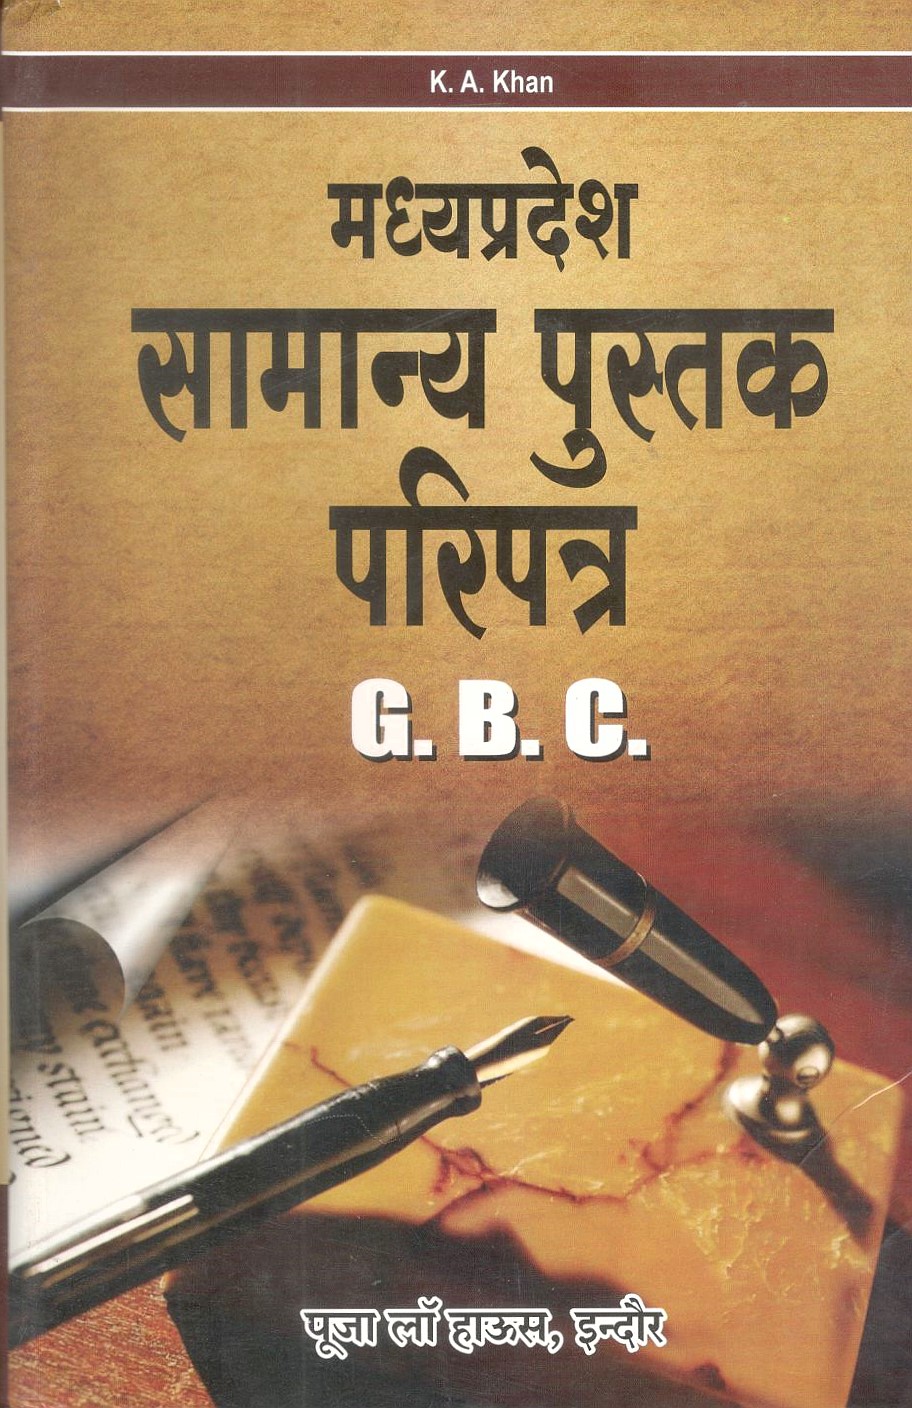 मध्य प्रदेश सामान्य पुस्तक परिपत्र / Madhya Pradesh General Book Circulars (G.B.C.)